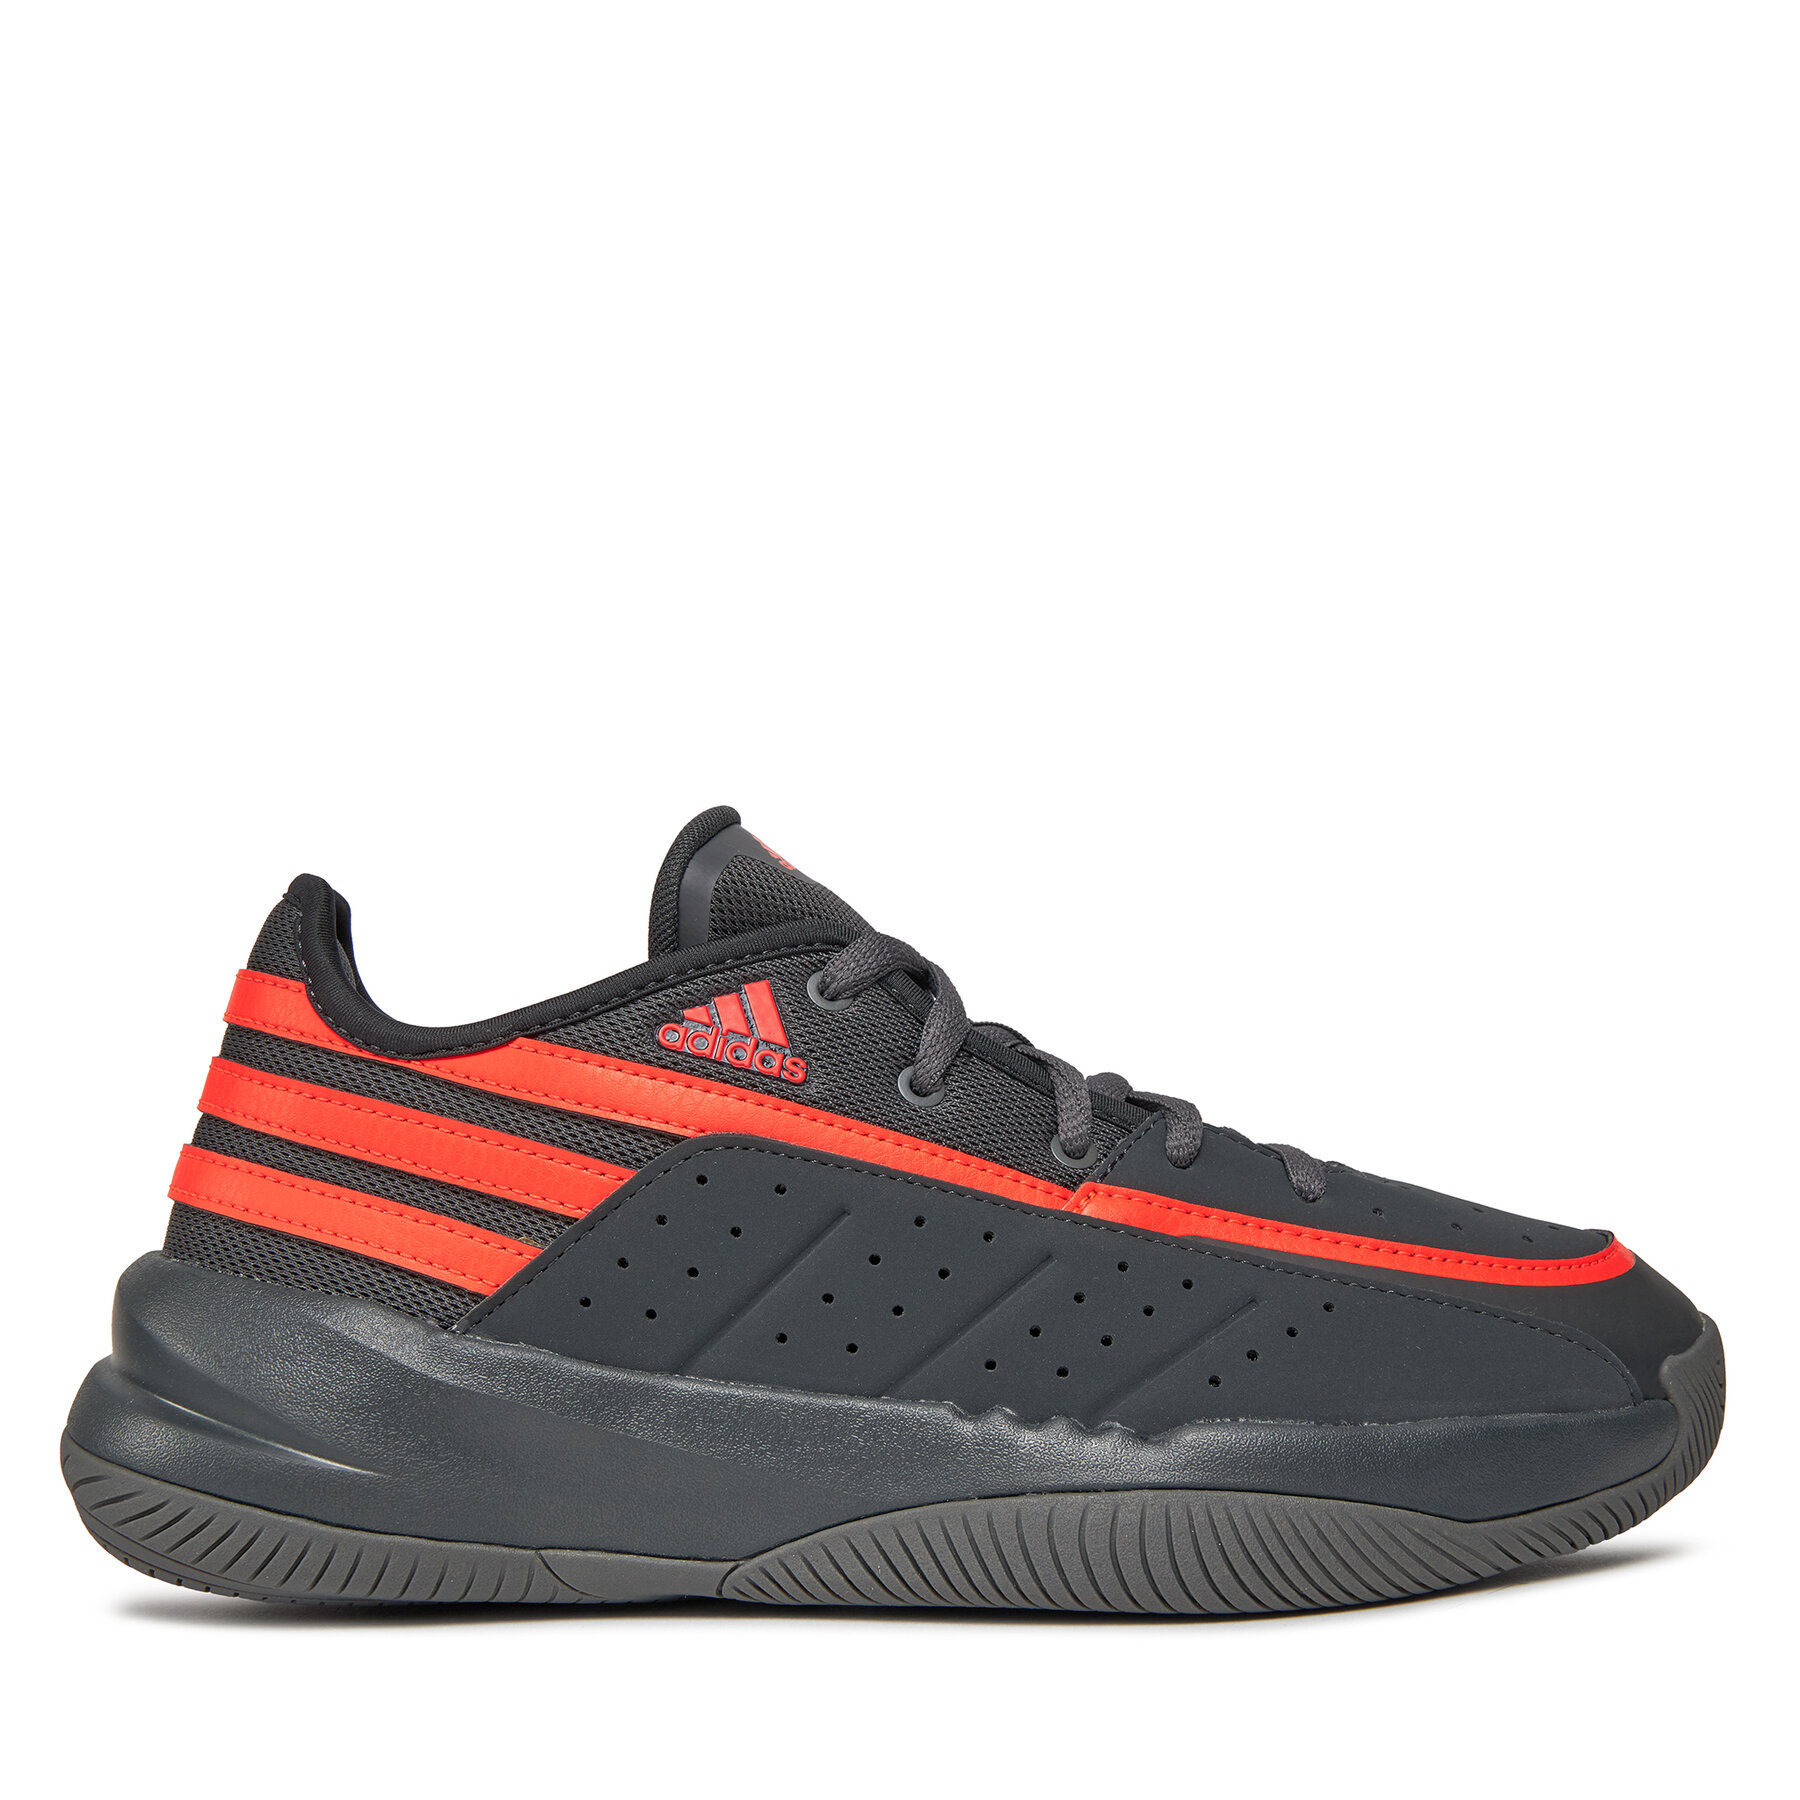 Adidas Basketball shoe colorful carbon gresix solred 29730629-42 - Zapatillas de baloncesto